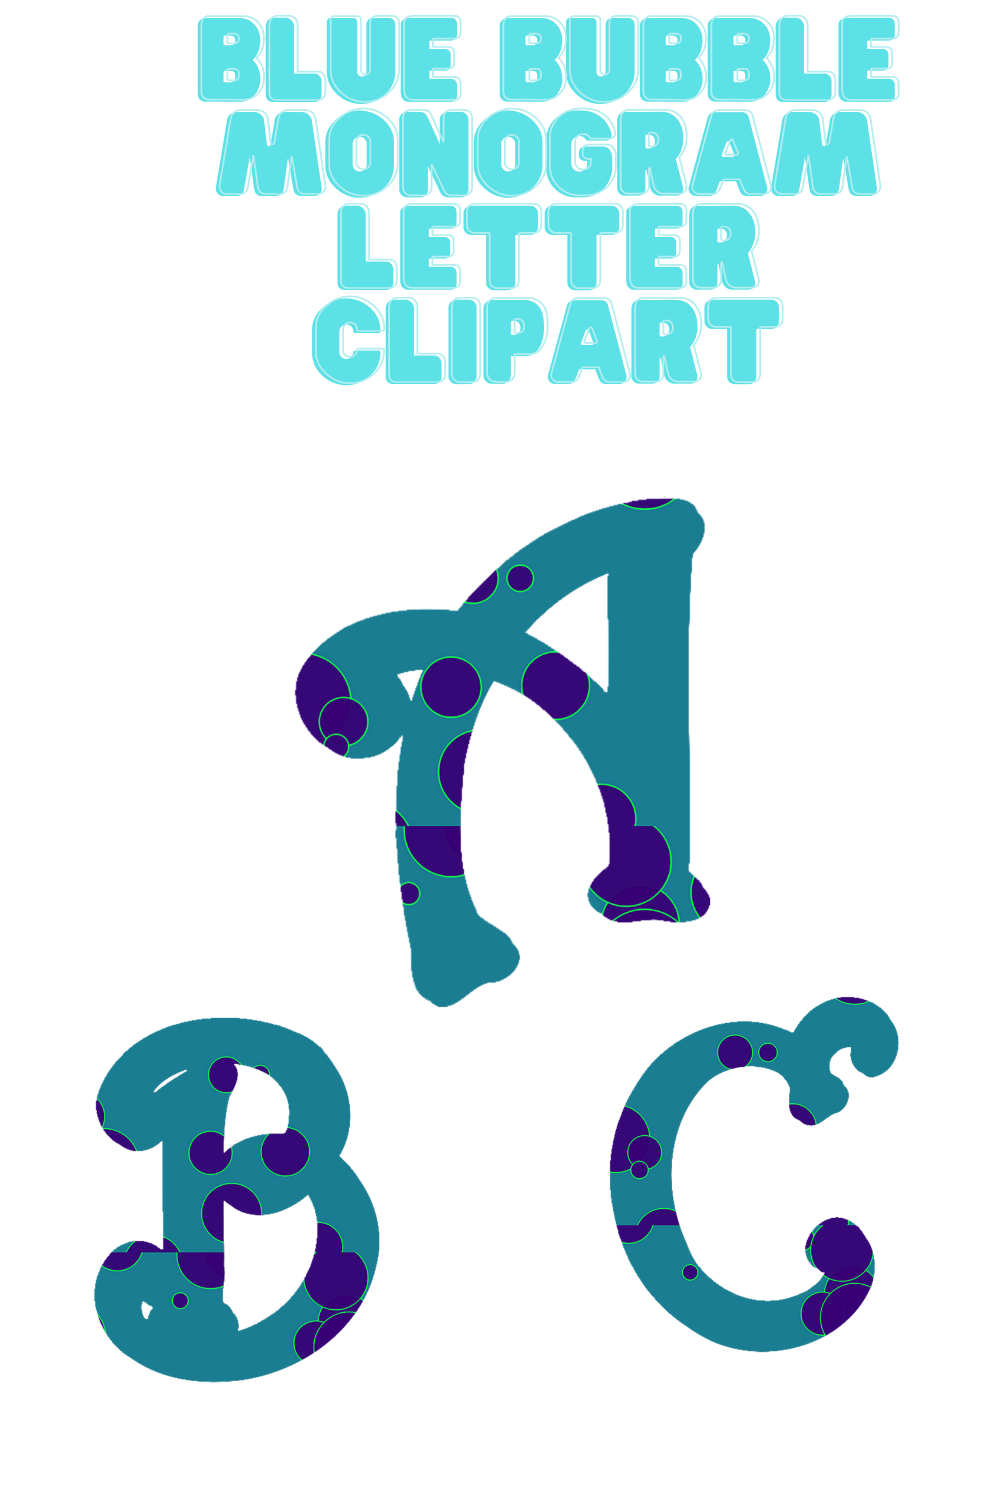 Blue Bubble Monogram Letter Clip Art - PNG, SVG and AI Vector Images